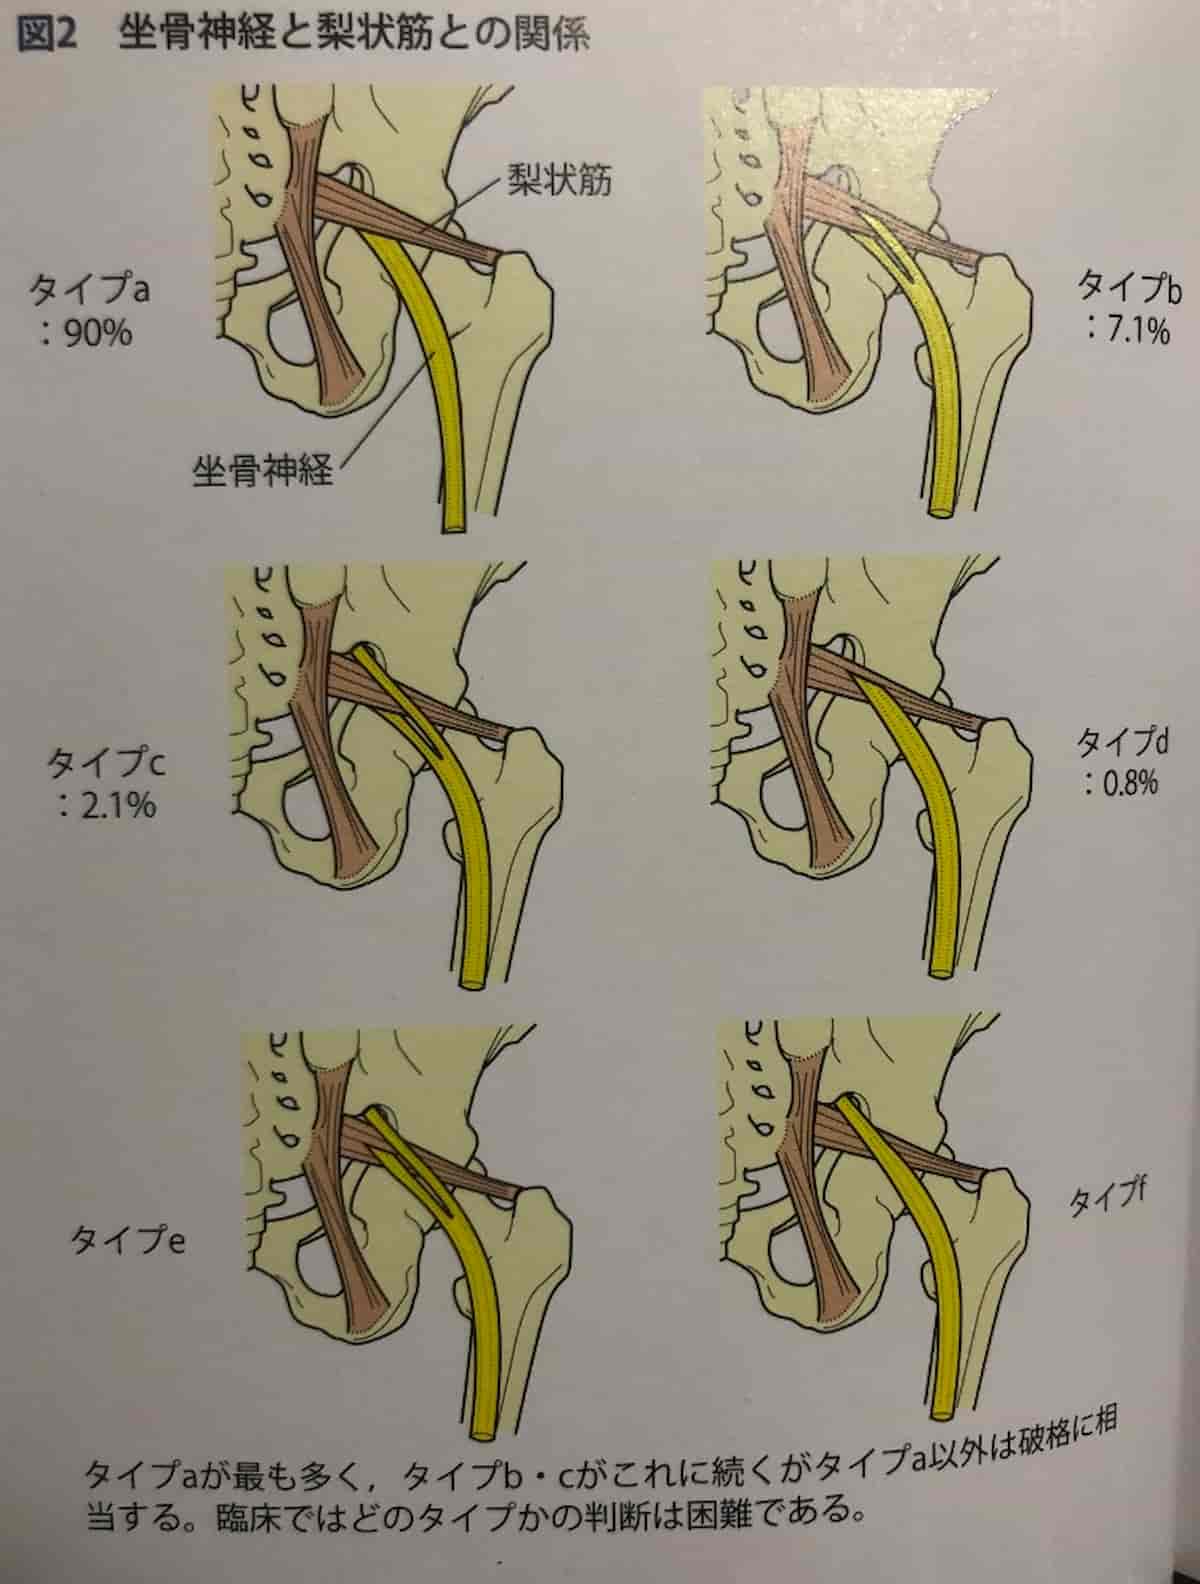 坐骨神経と梨状筋の解剖